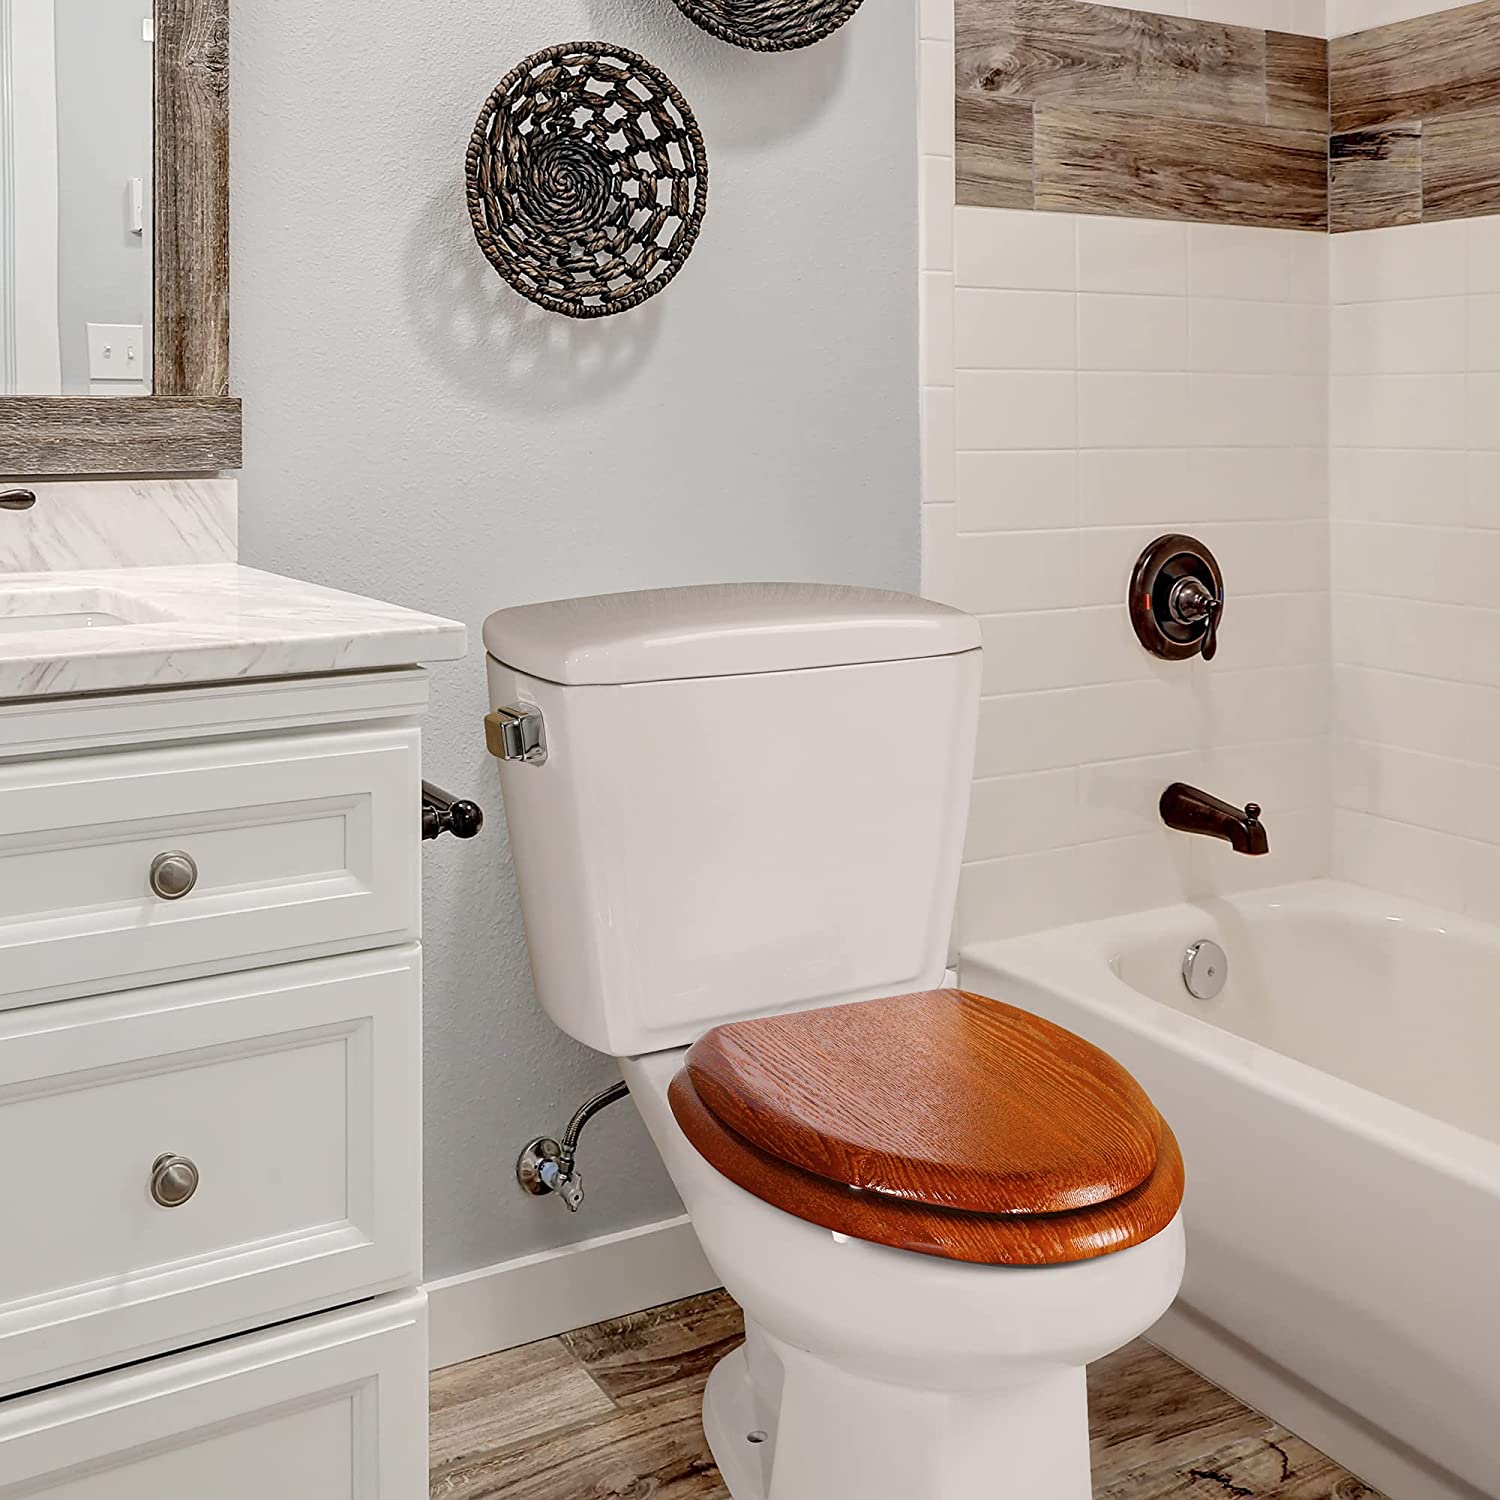 Nắp bồn toilet bằng gỗ vừa mang lại cảm giác ấm áp vừa tạo điểm nhấn cho phòng tắm nhỏ nhờ sự tương phản màu sắc.